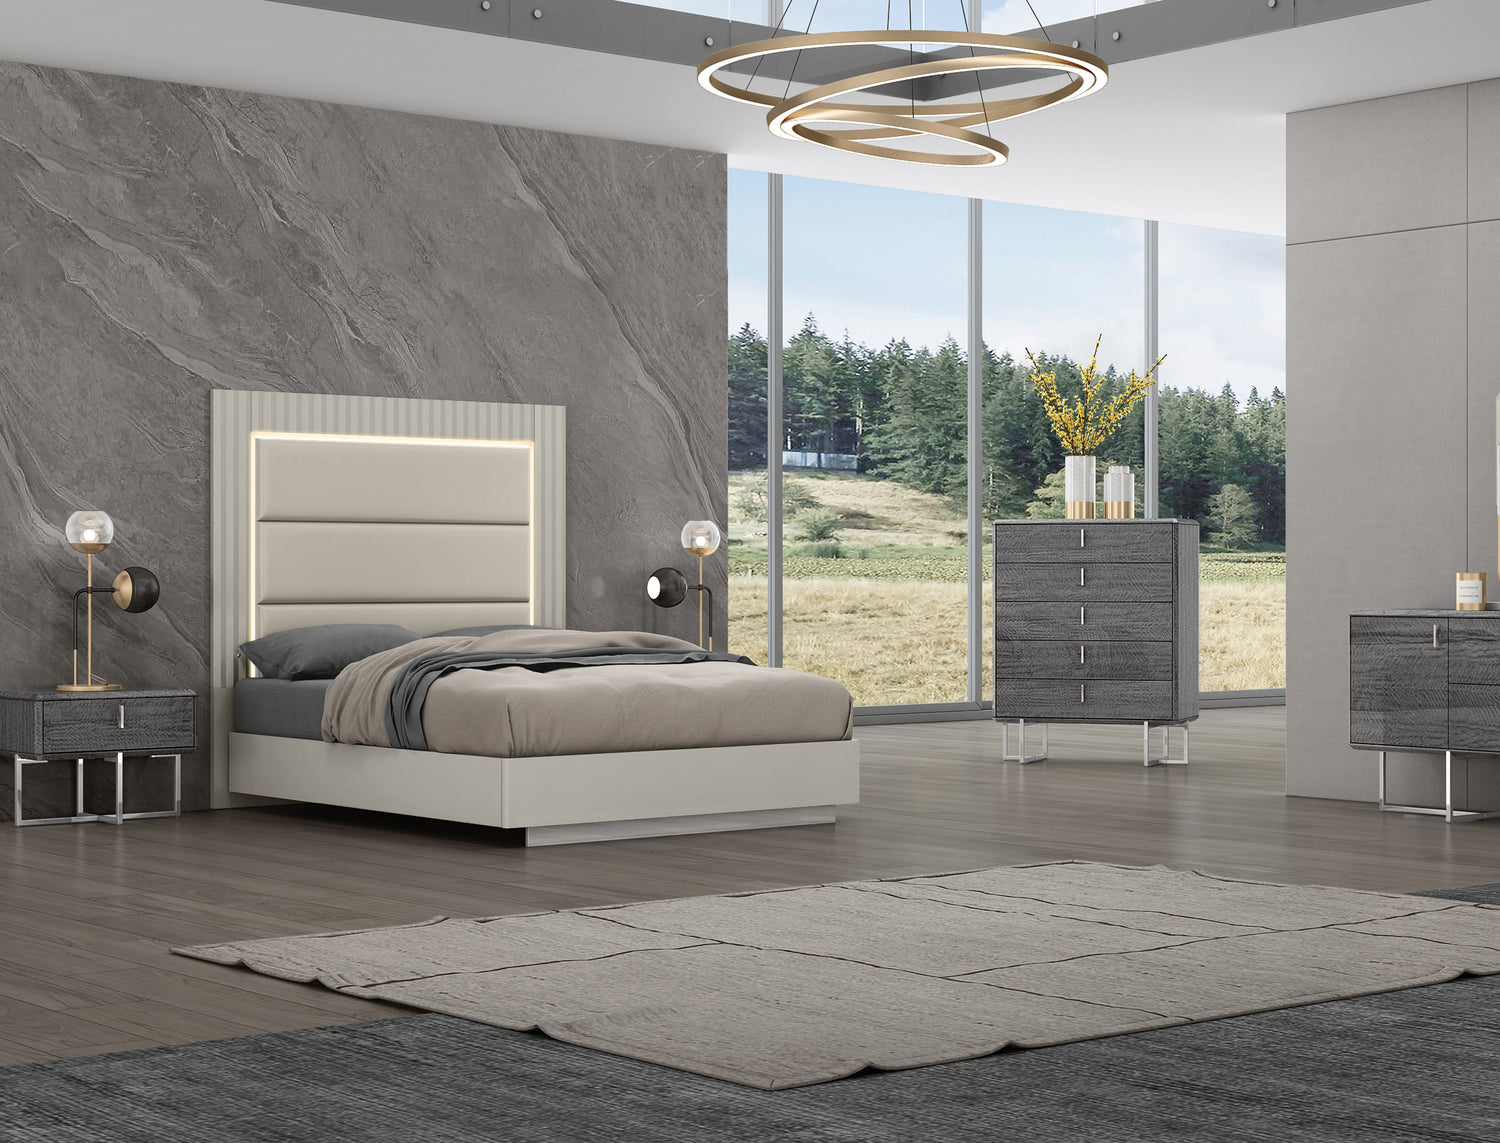 Shop For Bedroom Furniture Under $1000